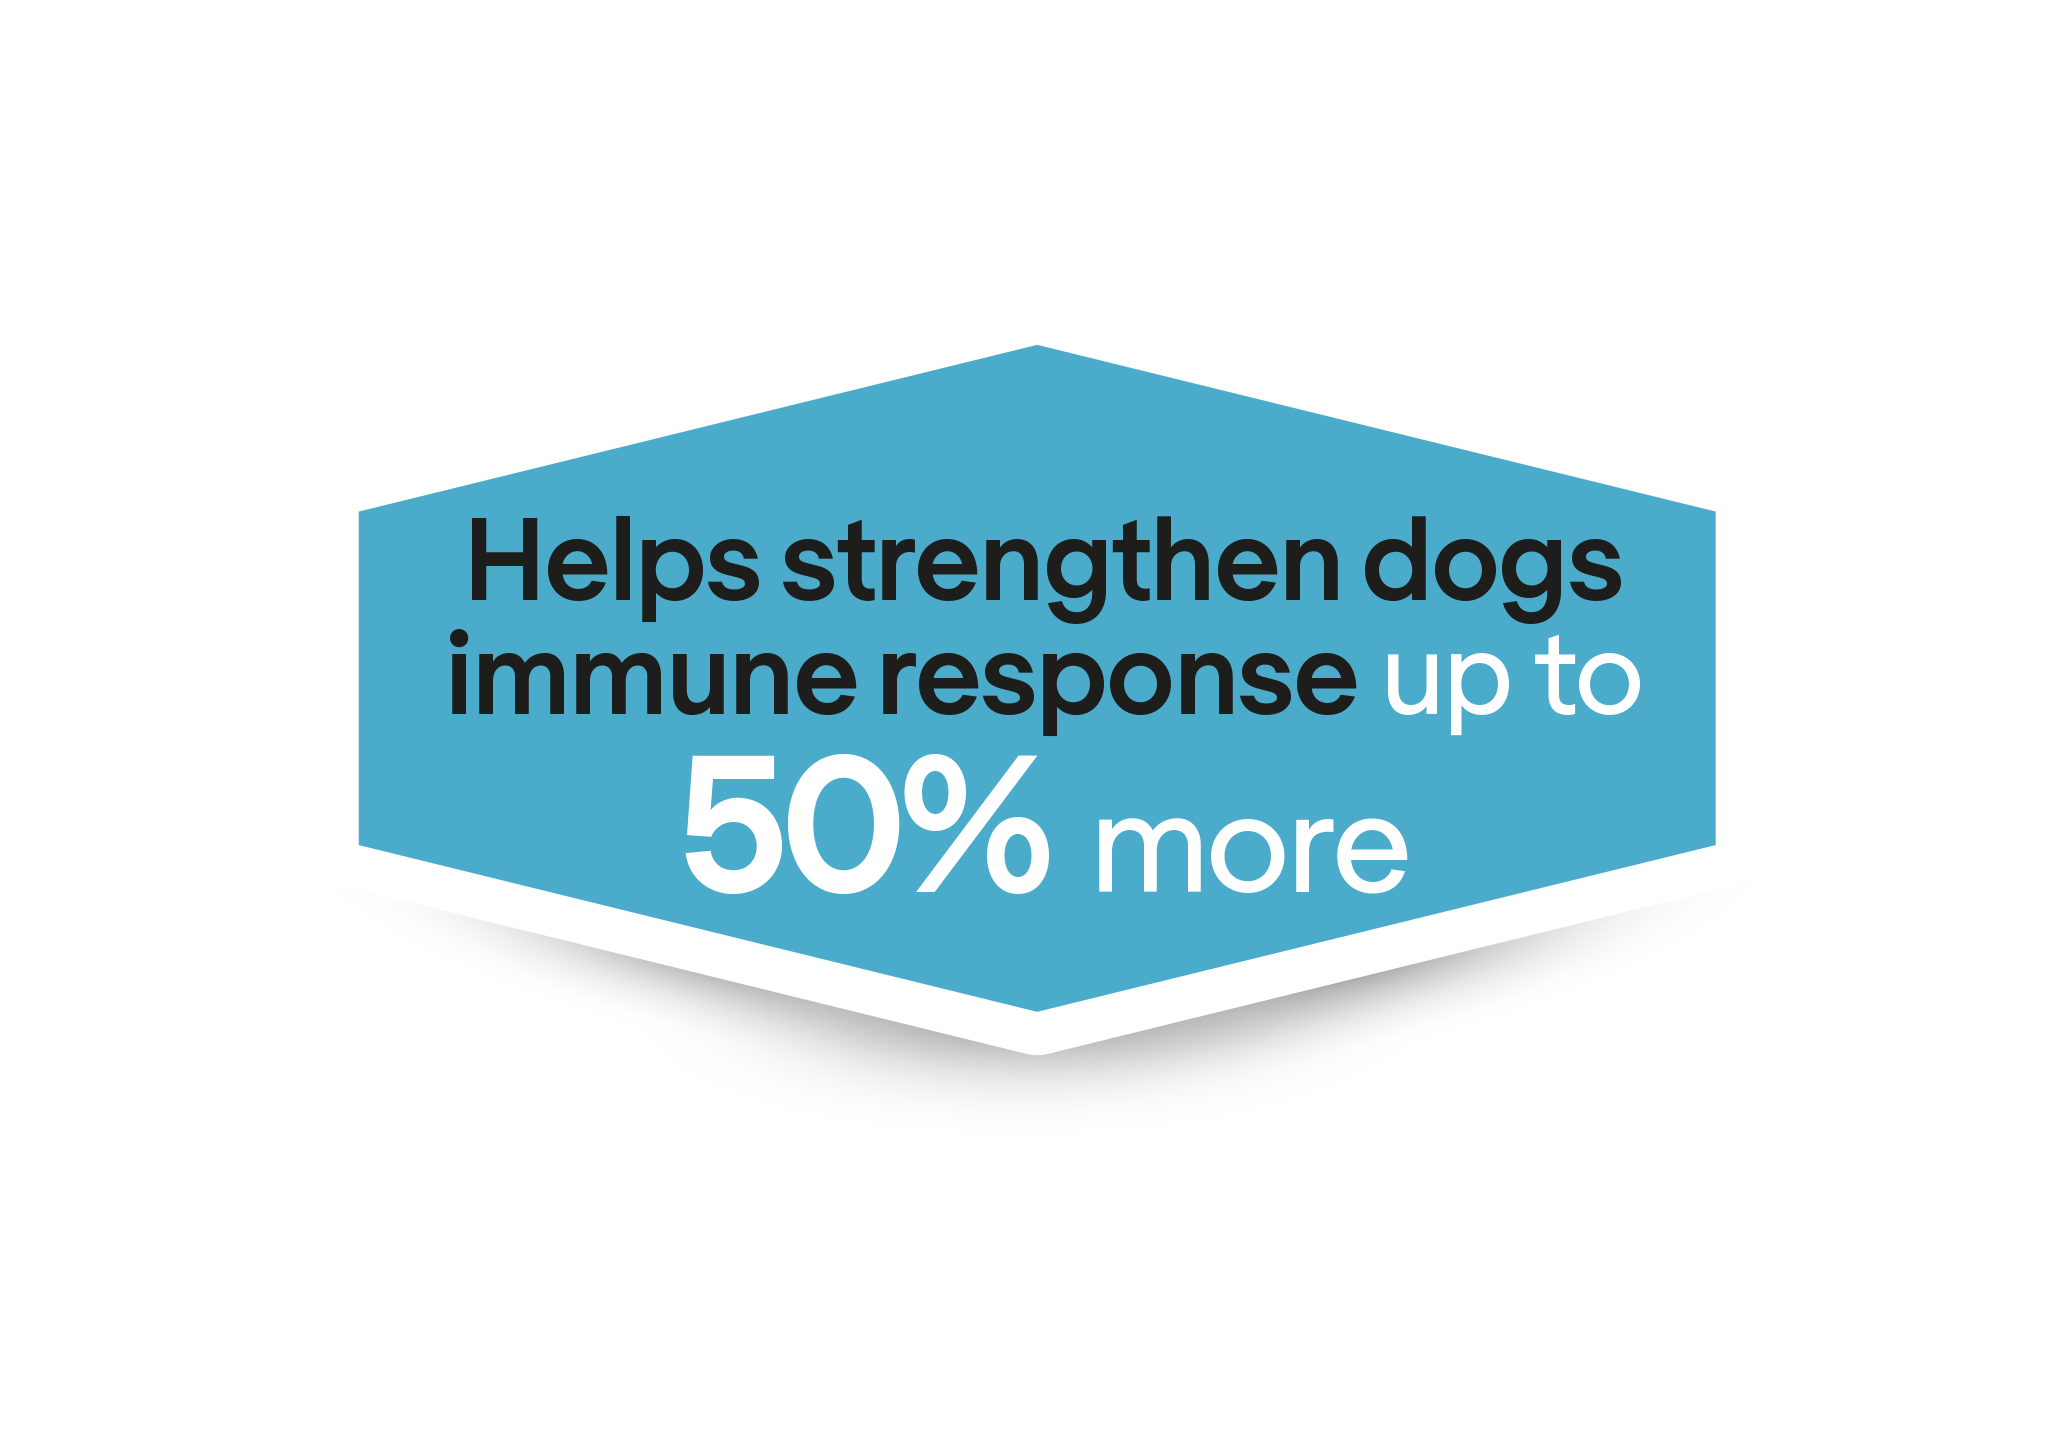 Βοηθά στην ενίσχυση της ανοσολογικής απόκρισης των σκύλων έως και 50% περισσότερο